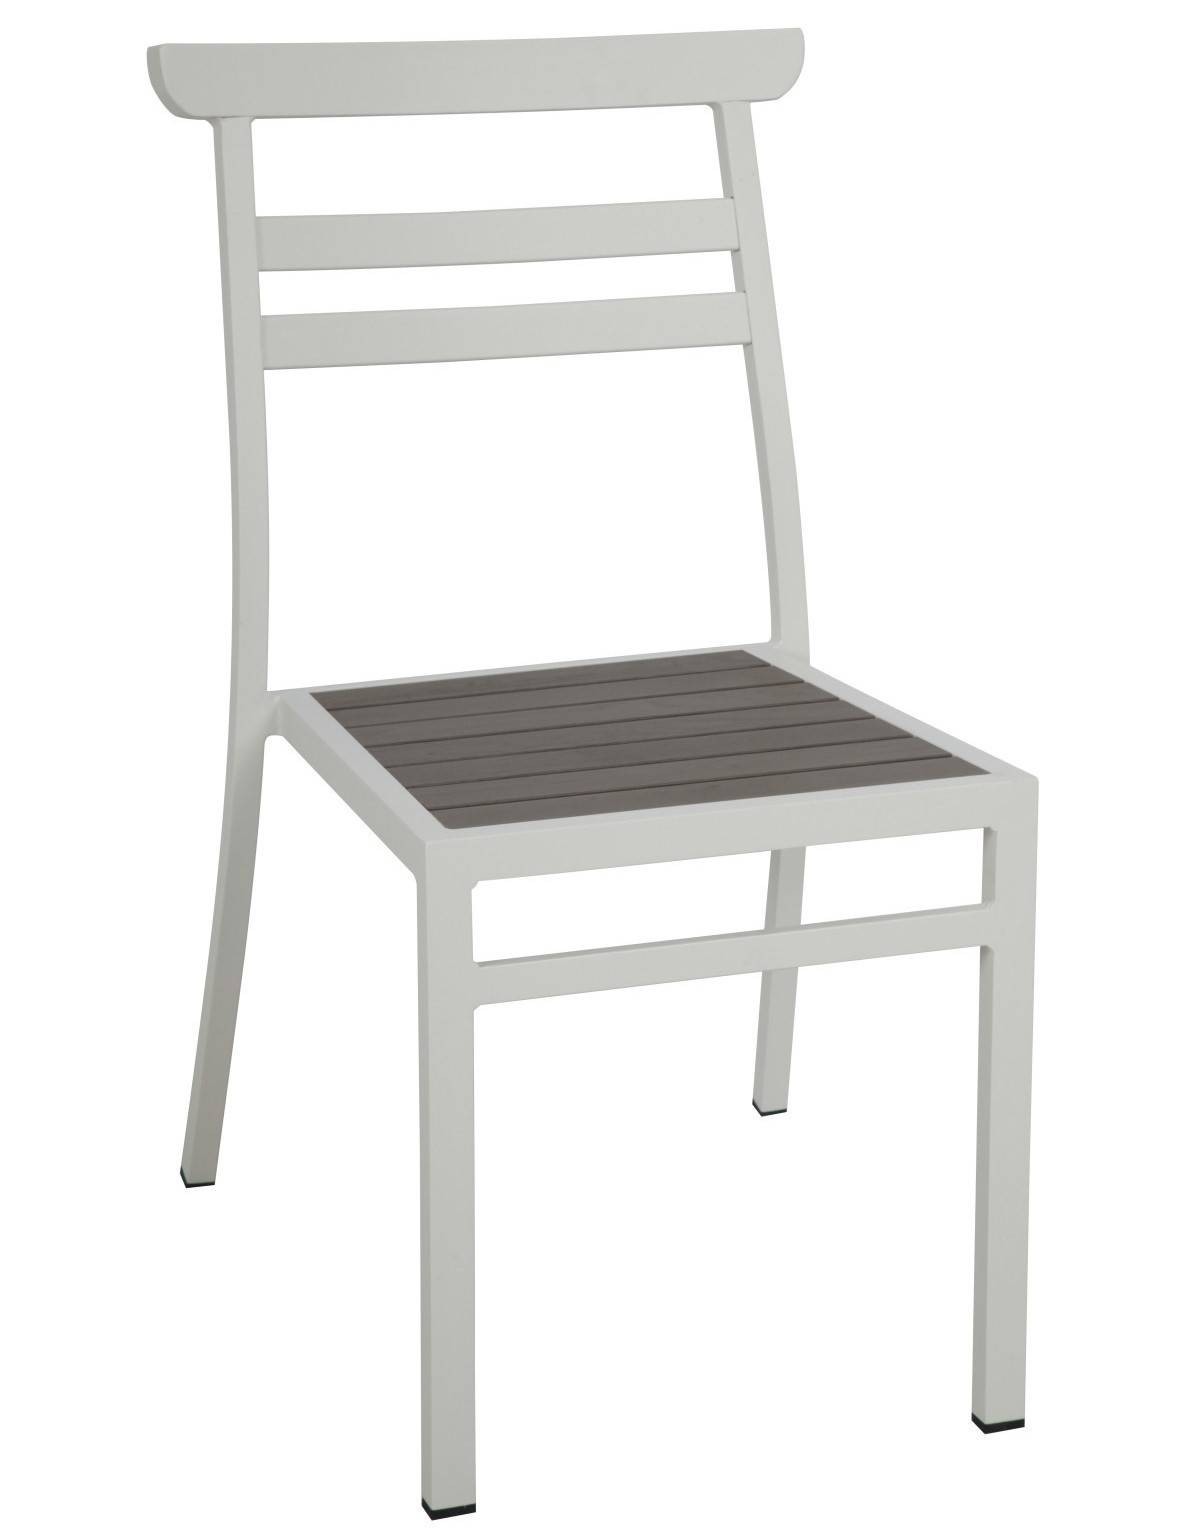 sedia-ceriale-in-alluminio-bianco.jpg